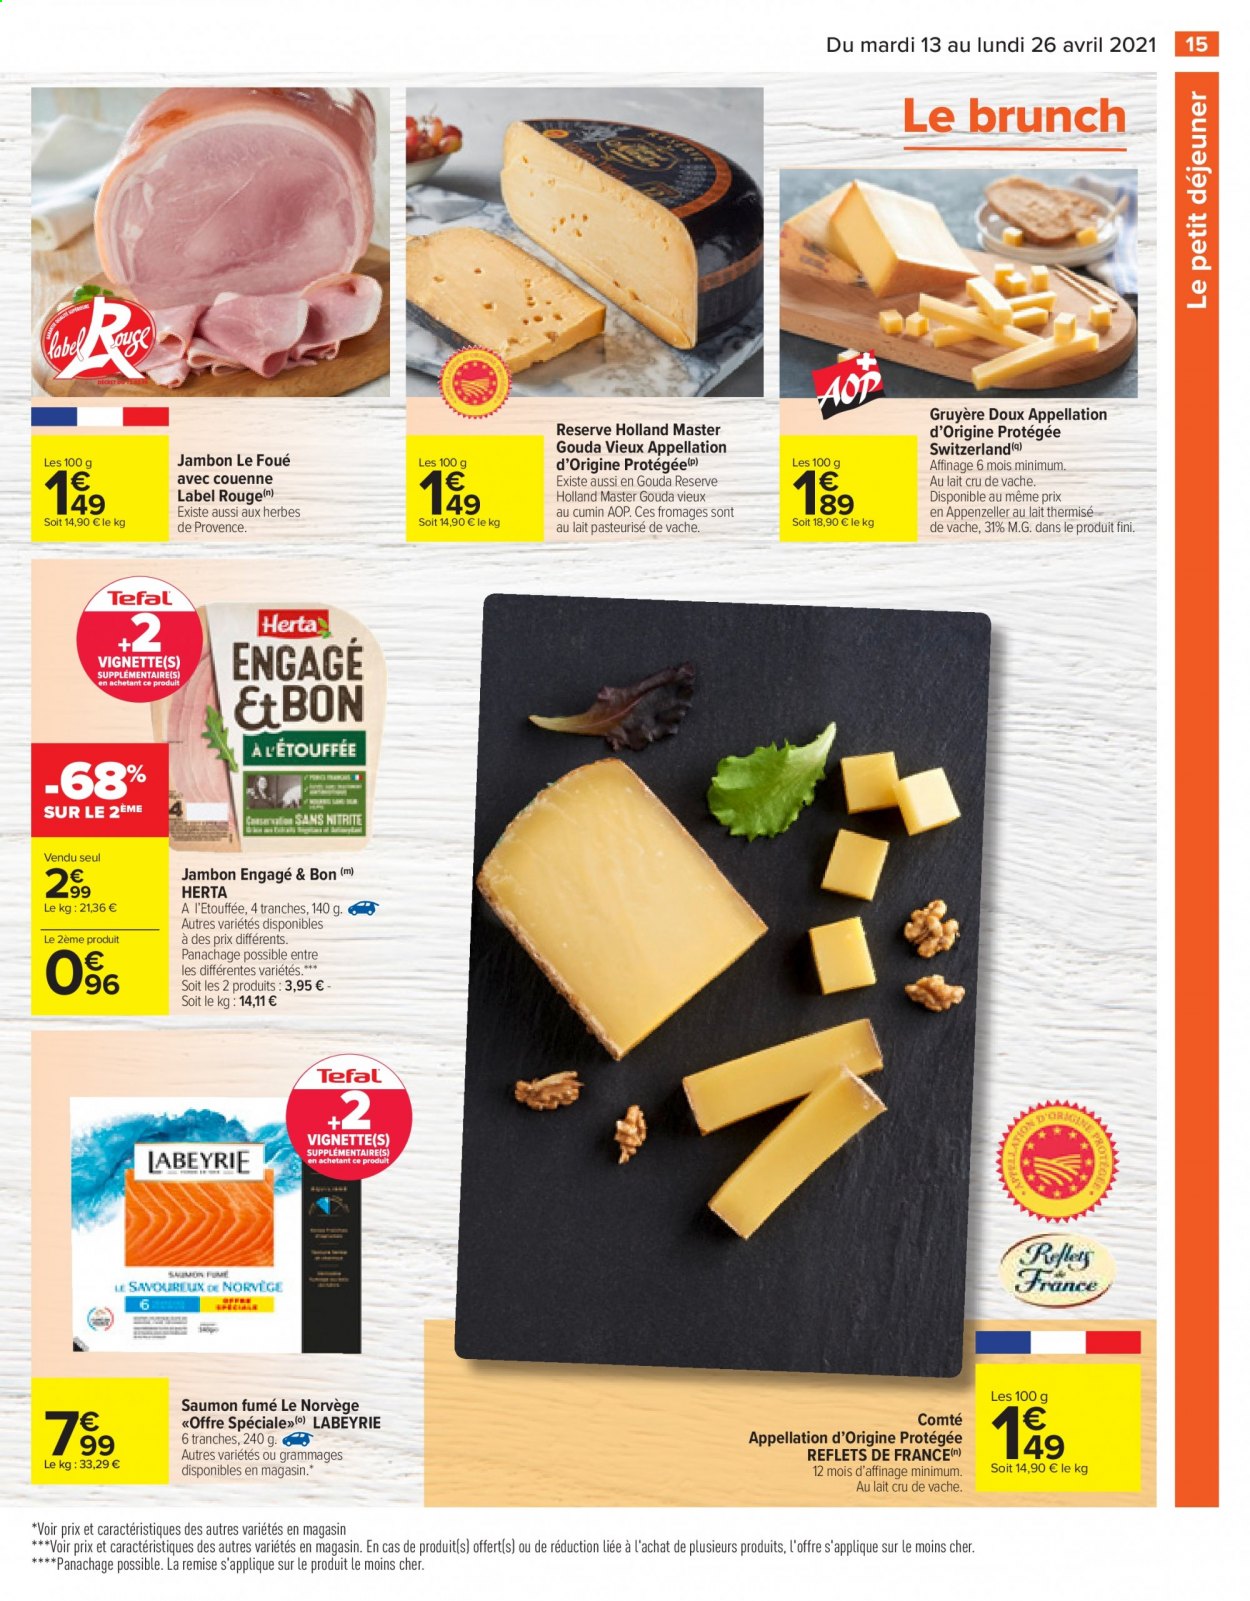 thumbnail - Catalogue Carrefour Hypermarchés - 13/04/2021 - 26/04/2021 - Produits soldés - saumon, Labeyrie, Herta, jambon, saumon fumé, Comté, gruyère. Page 17.